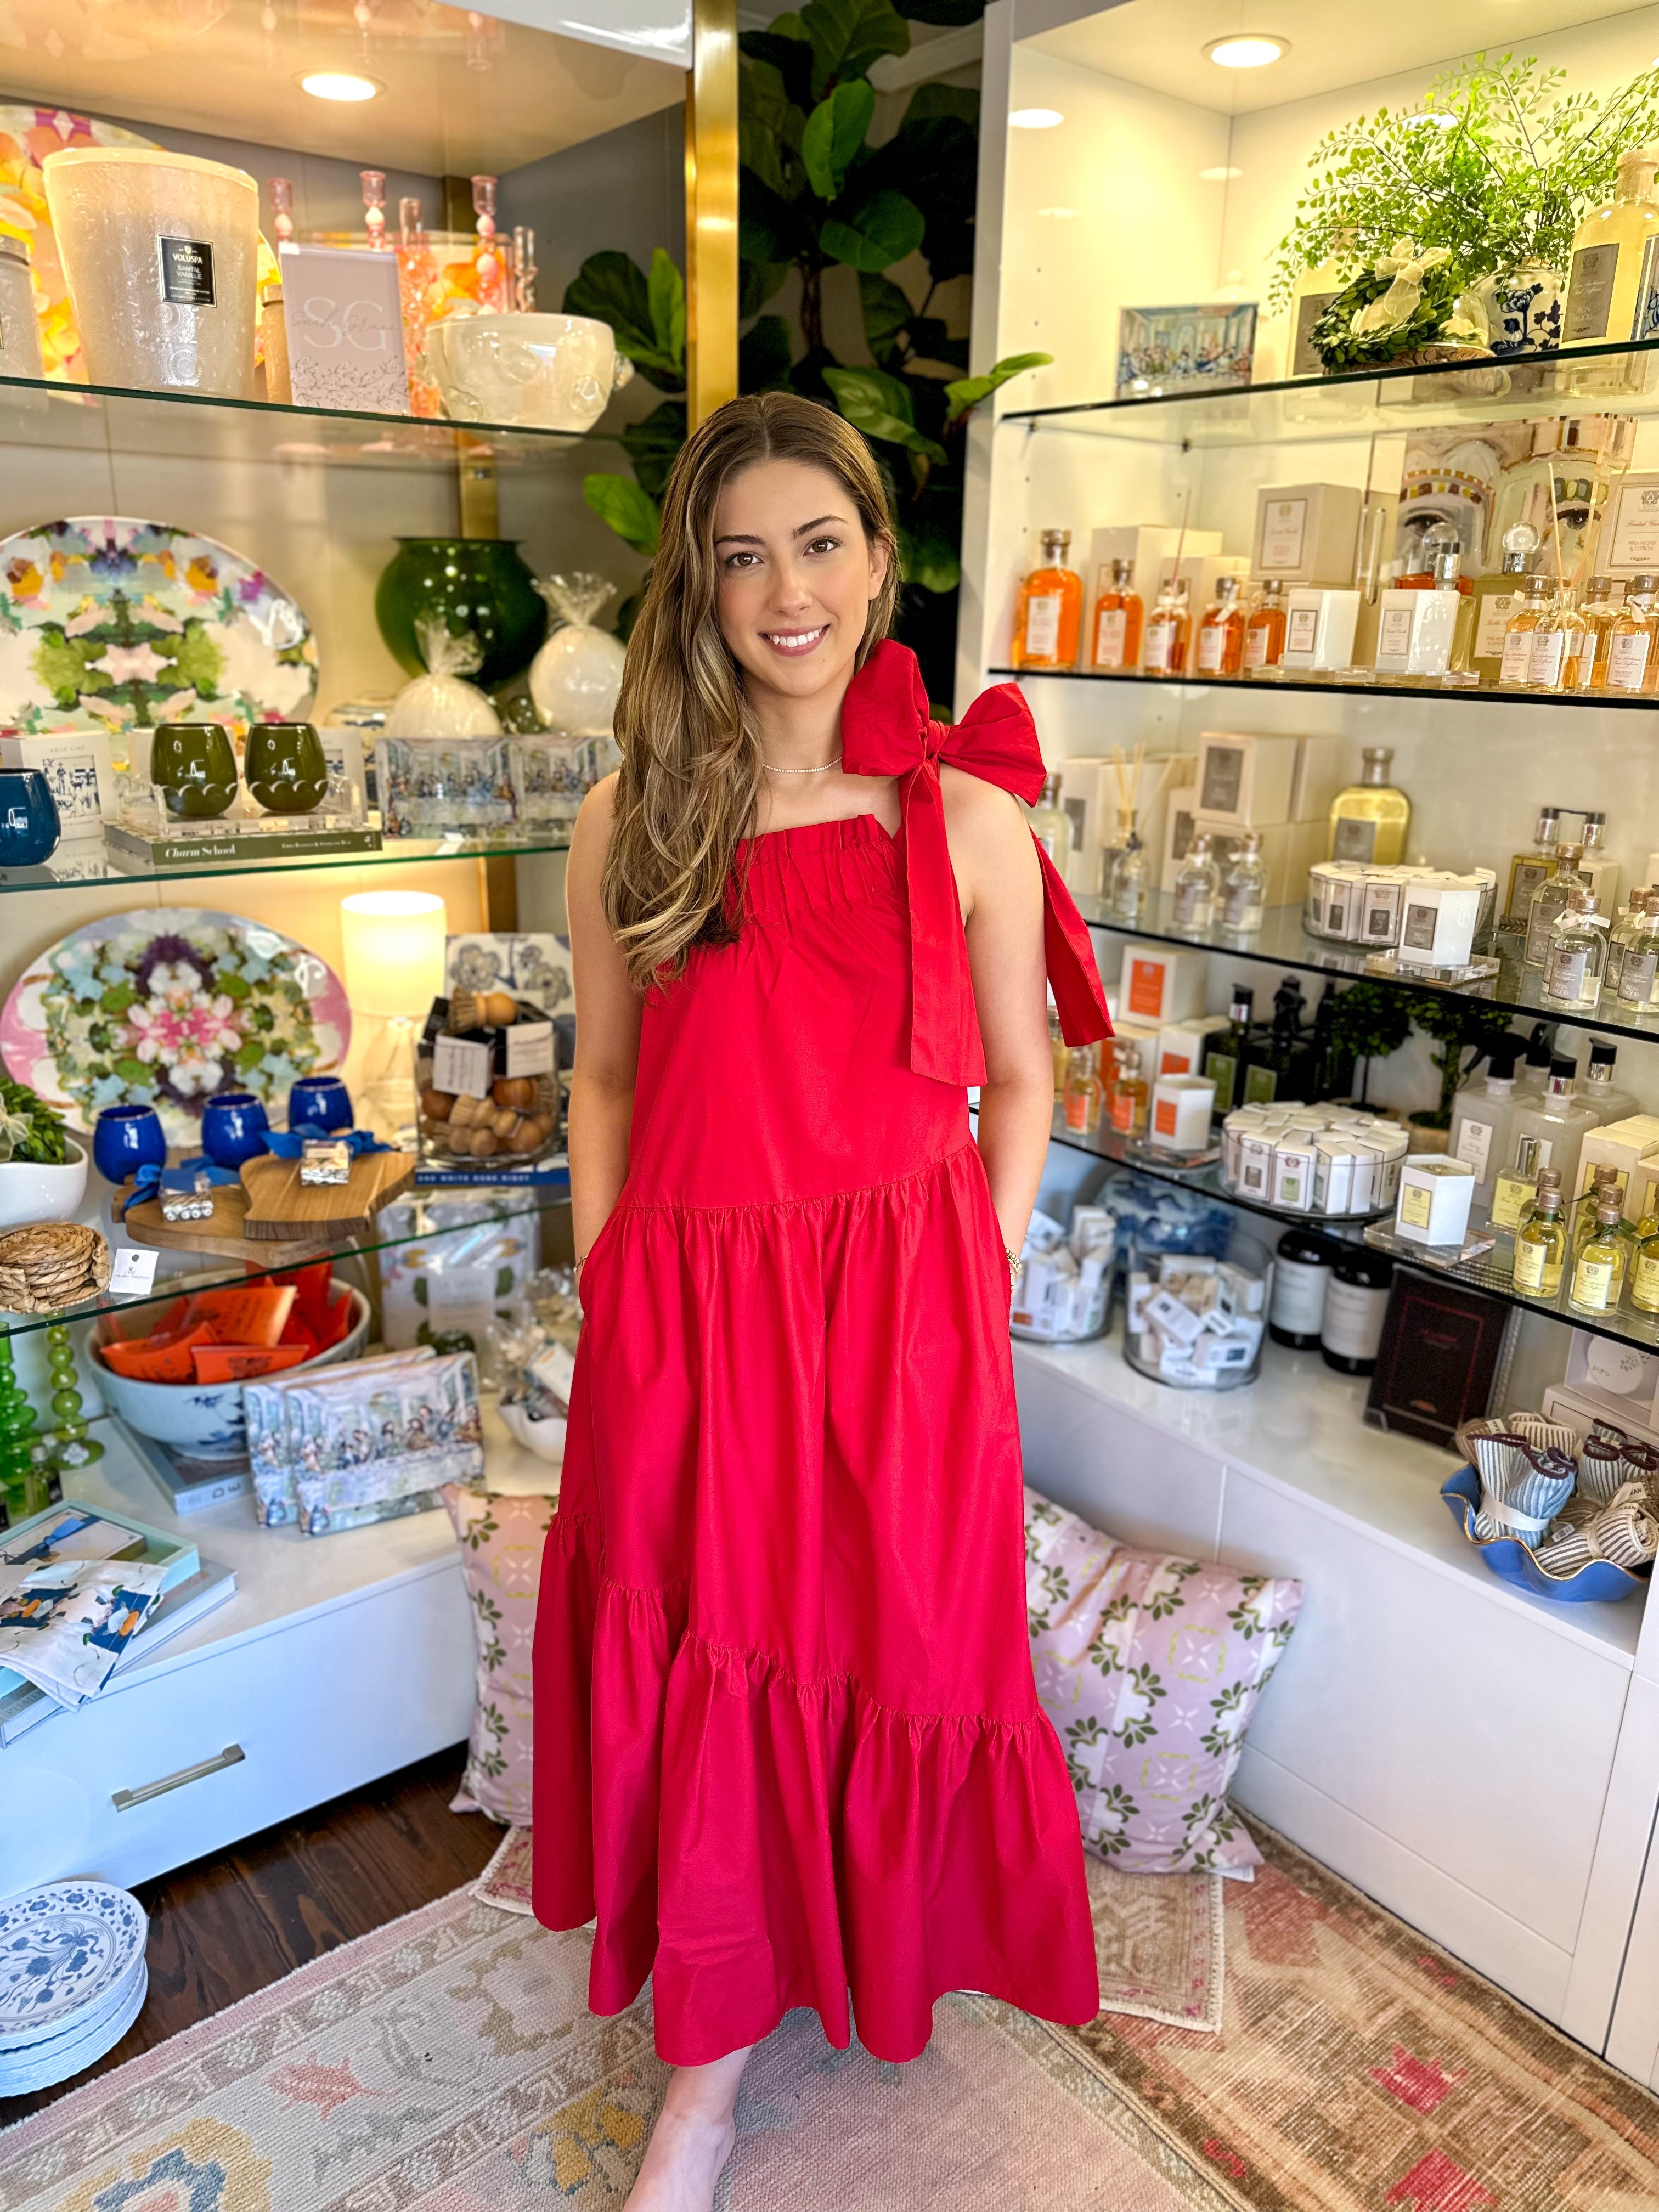 Abigail Color Block Dress – The Katie Grace Boutique